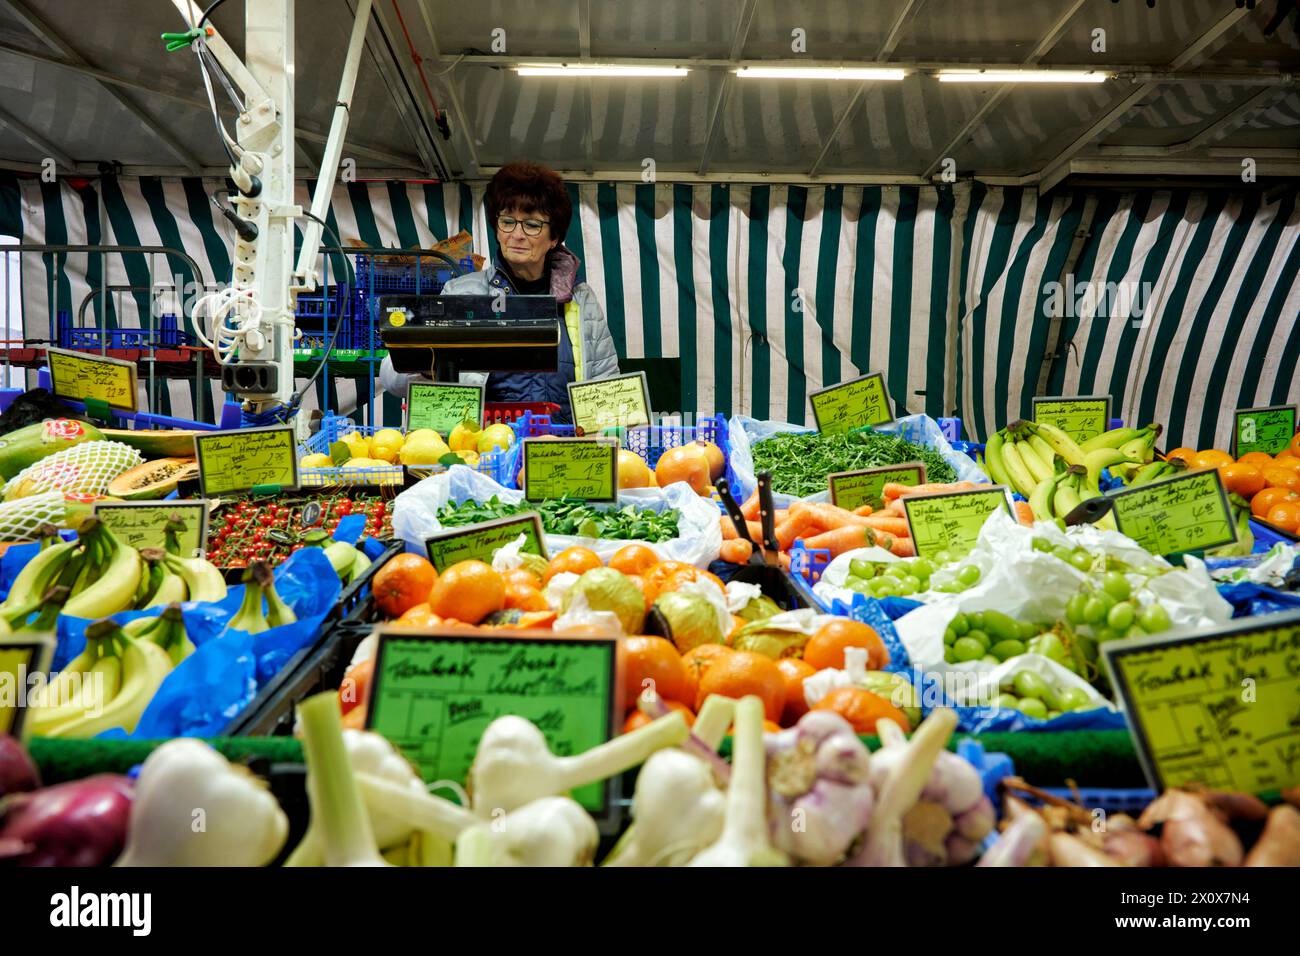 Reichhaltige Obst- und Gemüseauswahl an einem Marktstand. Eine Verkäuferin steht im Hintergrund an einer Waage und wiegt aus. Foto Stock